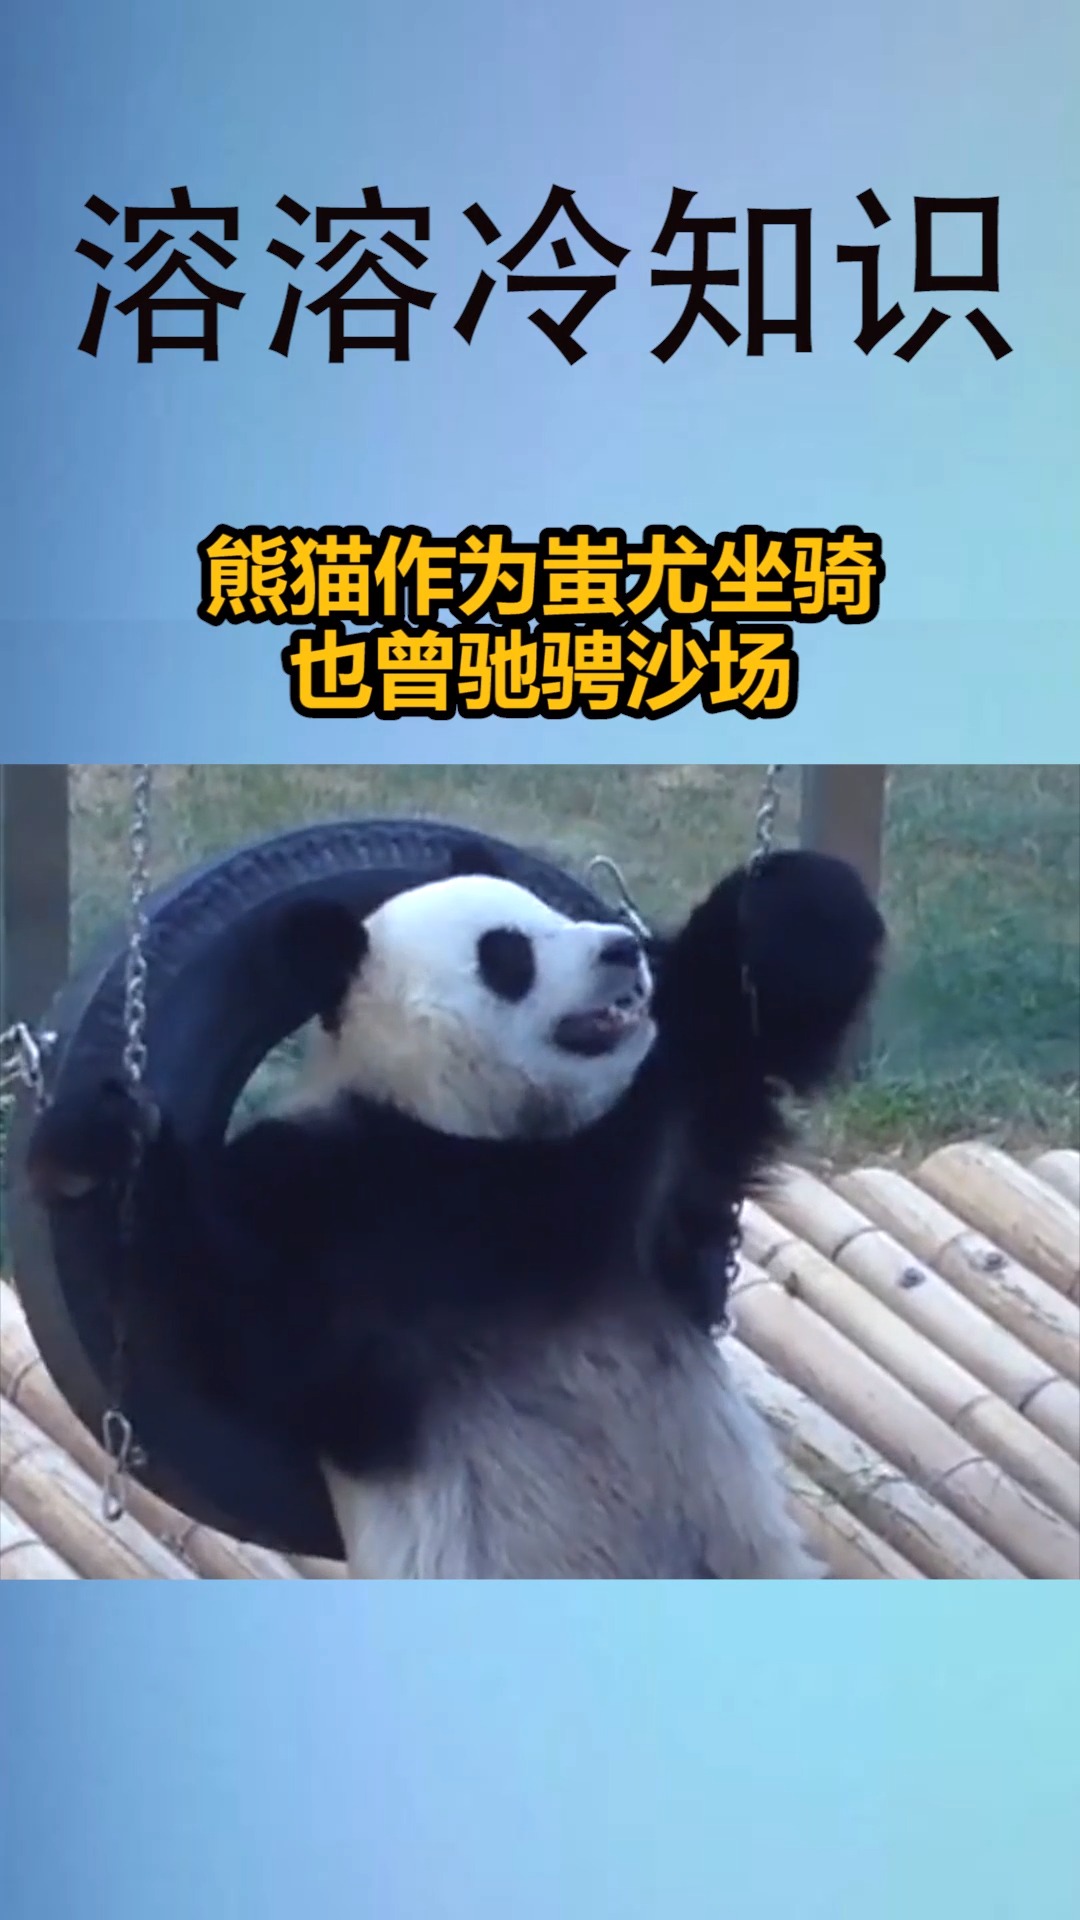 我要上热门#熊猫作为蚩尤坐骑,也曾驰骋沙场